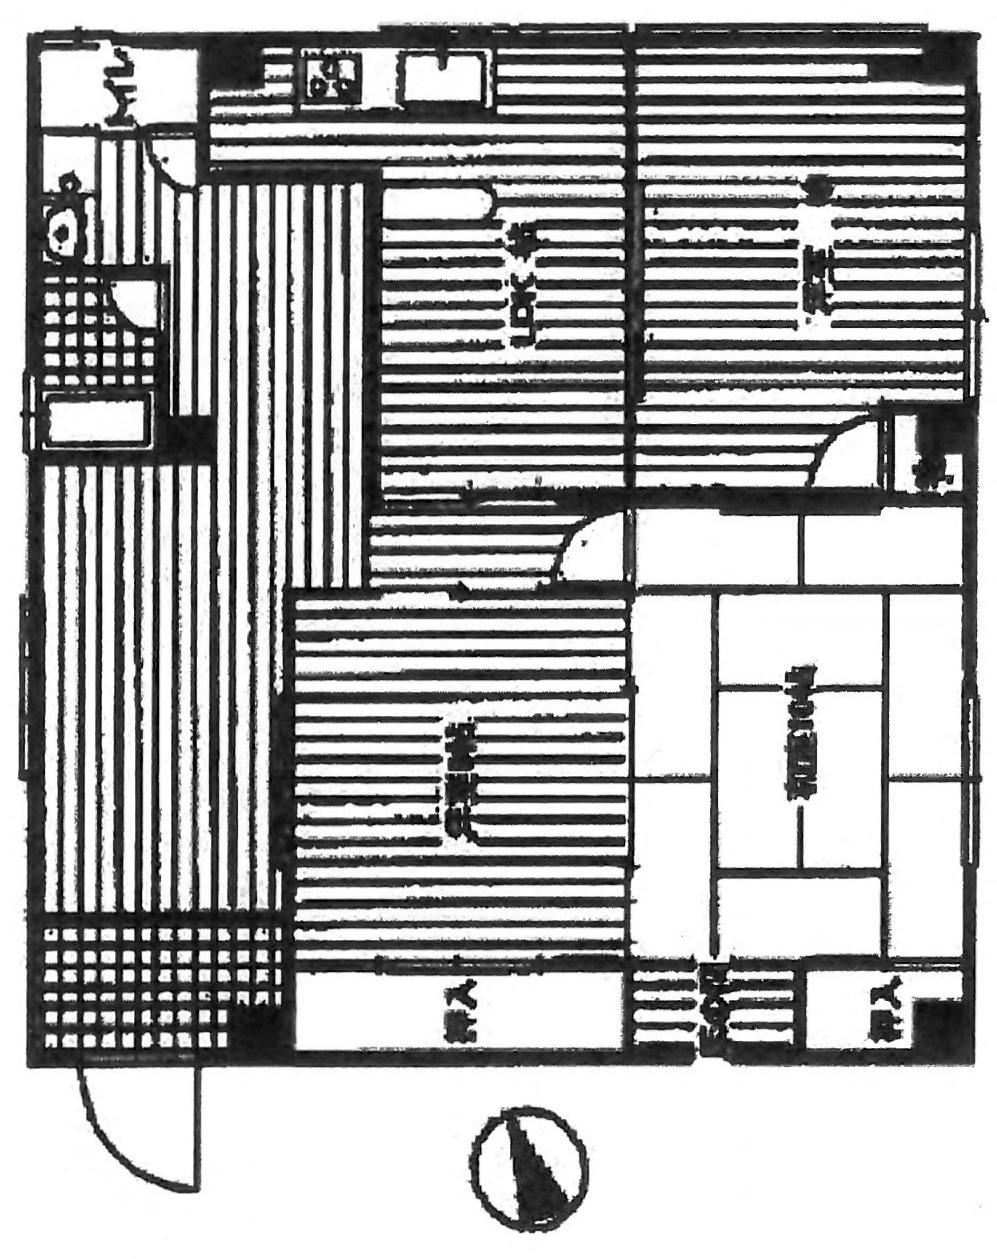 Floor plan. 3DK, Price 8 million yen, Footprint 102.72 sq m